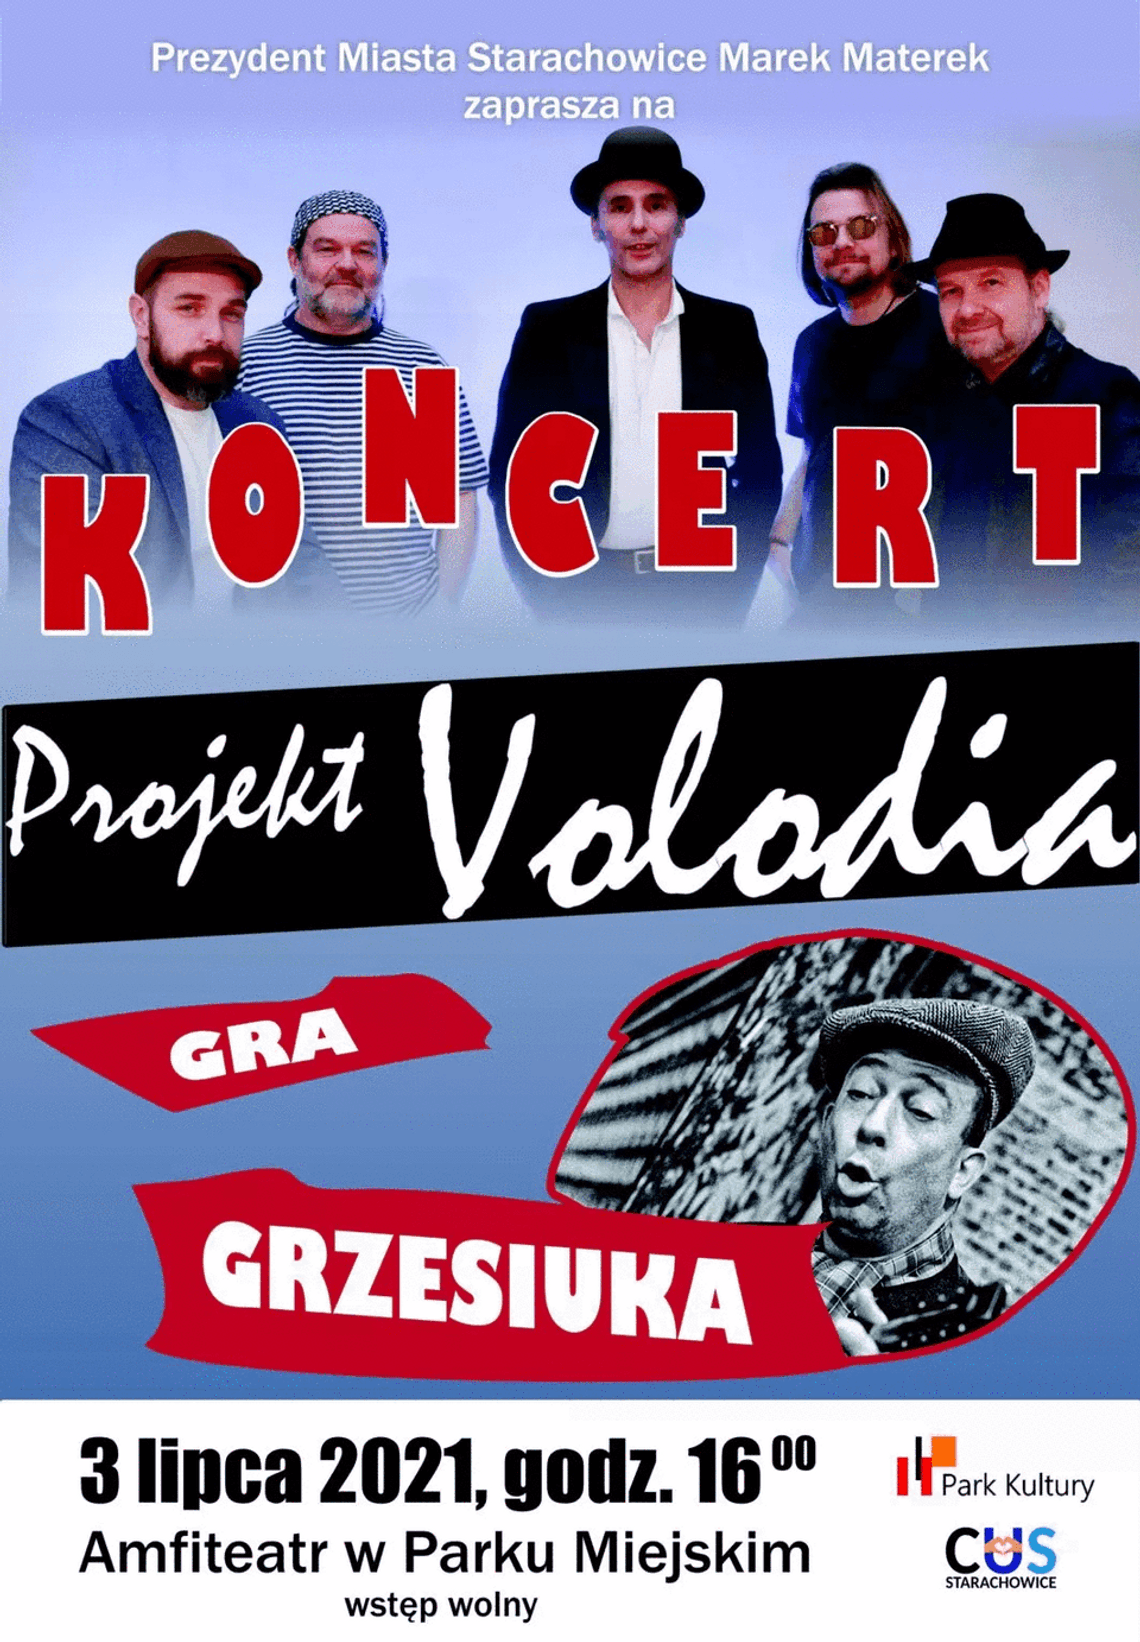 Koncert zespołu Projekt Volodia gra Grzesiuka odbędzie się w Parku Kultury